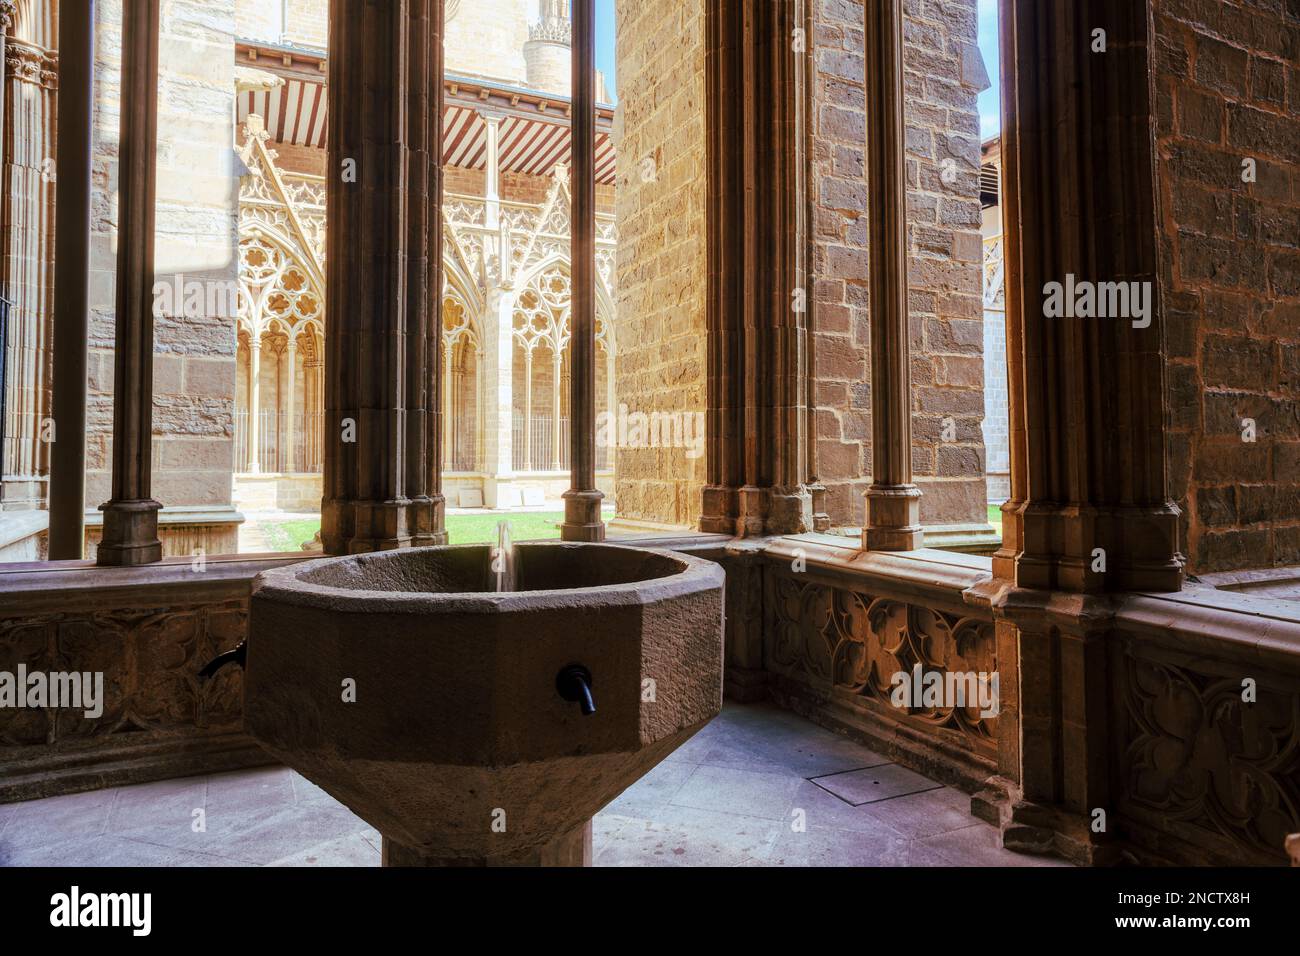 Lo scalpello d'acqua Santa nel chiostro gotico ornato archi portici del Pamplona Catedral de Santa Maria la Real, 15th ° secolo Cattedrale gotica Foto Stock